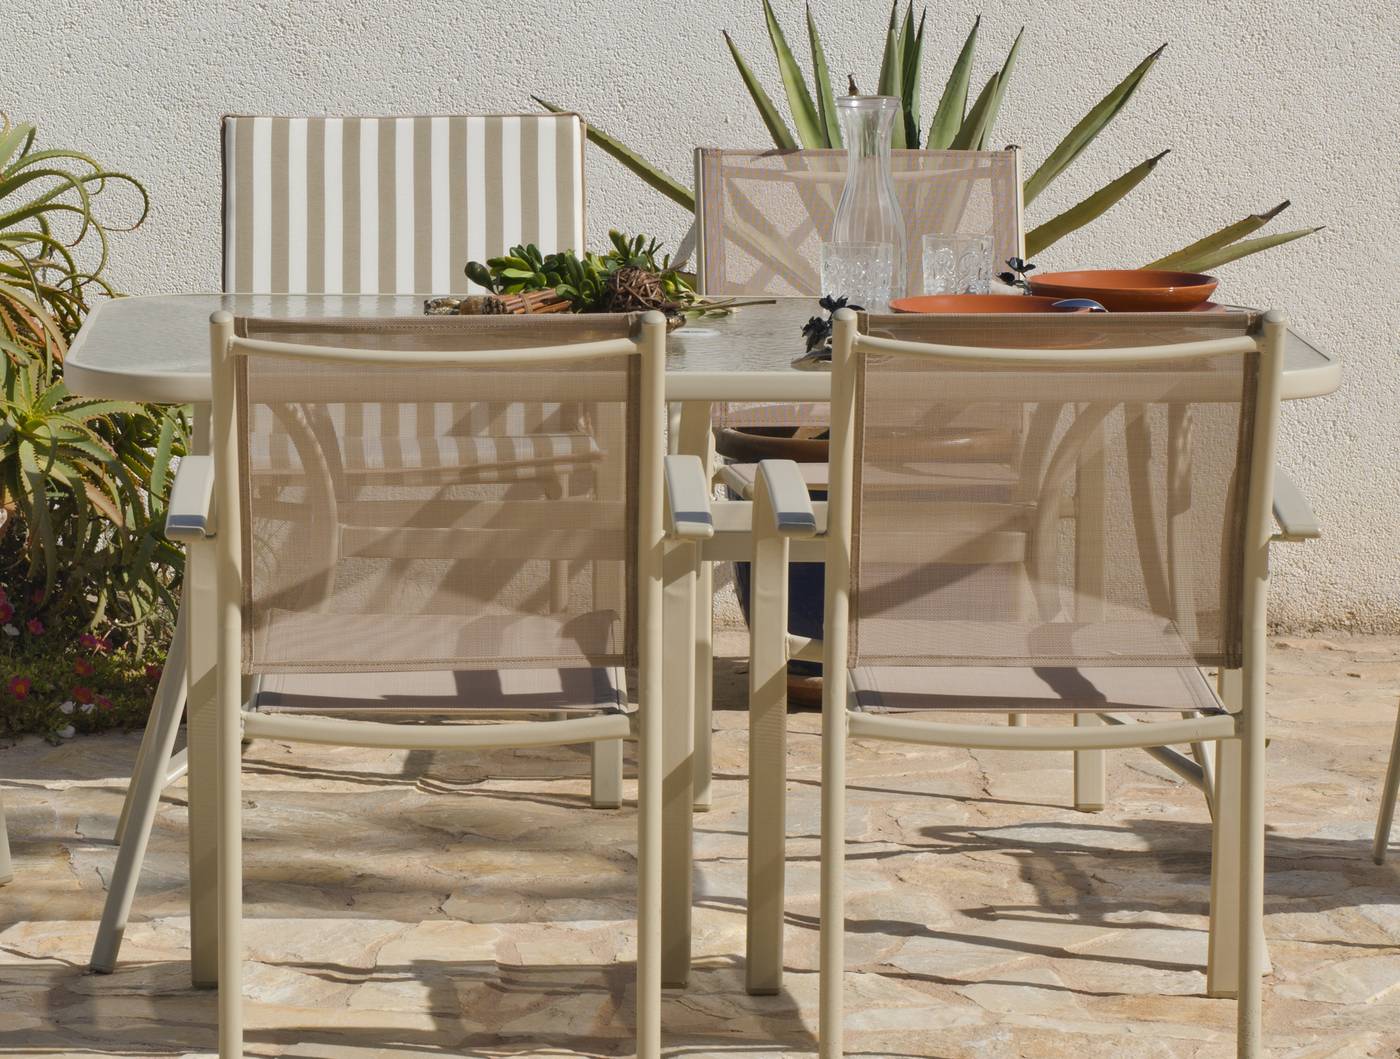 Conjunto Acero Castilla 150-4 - Conjunto de acero color champagne: mesa rectangular de 150 cm, con tablero de cristal templado + 4 sillones de acero y textilen